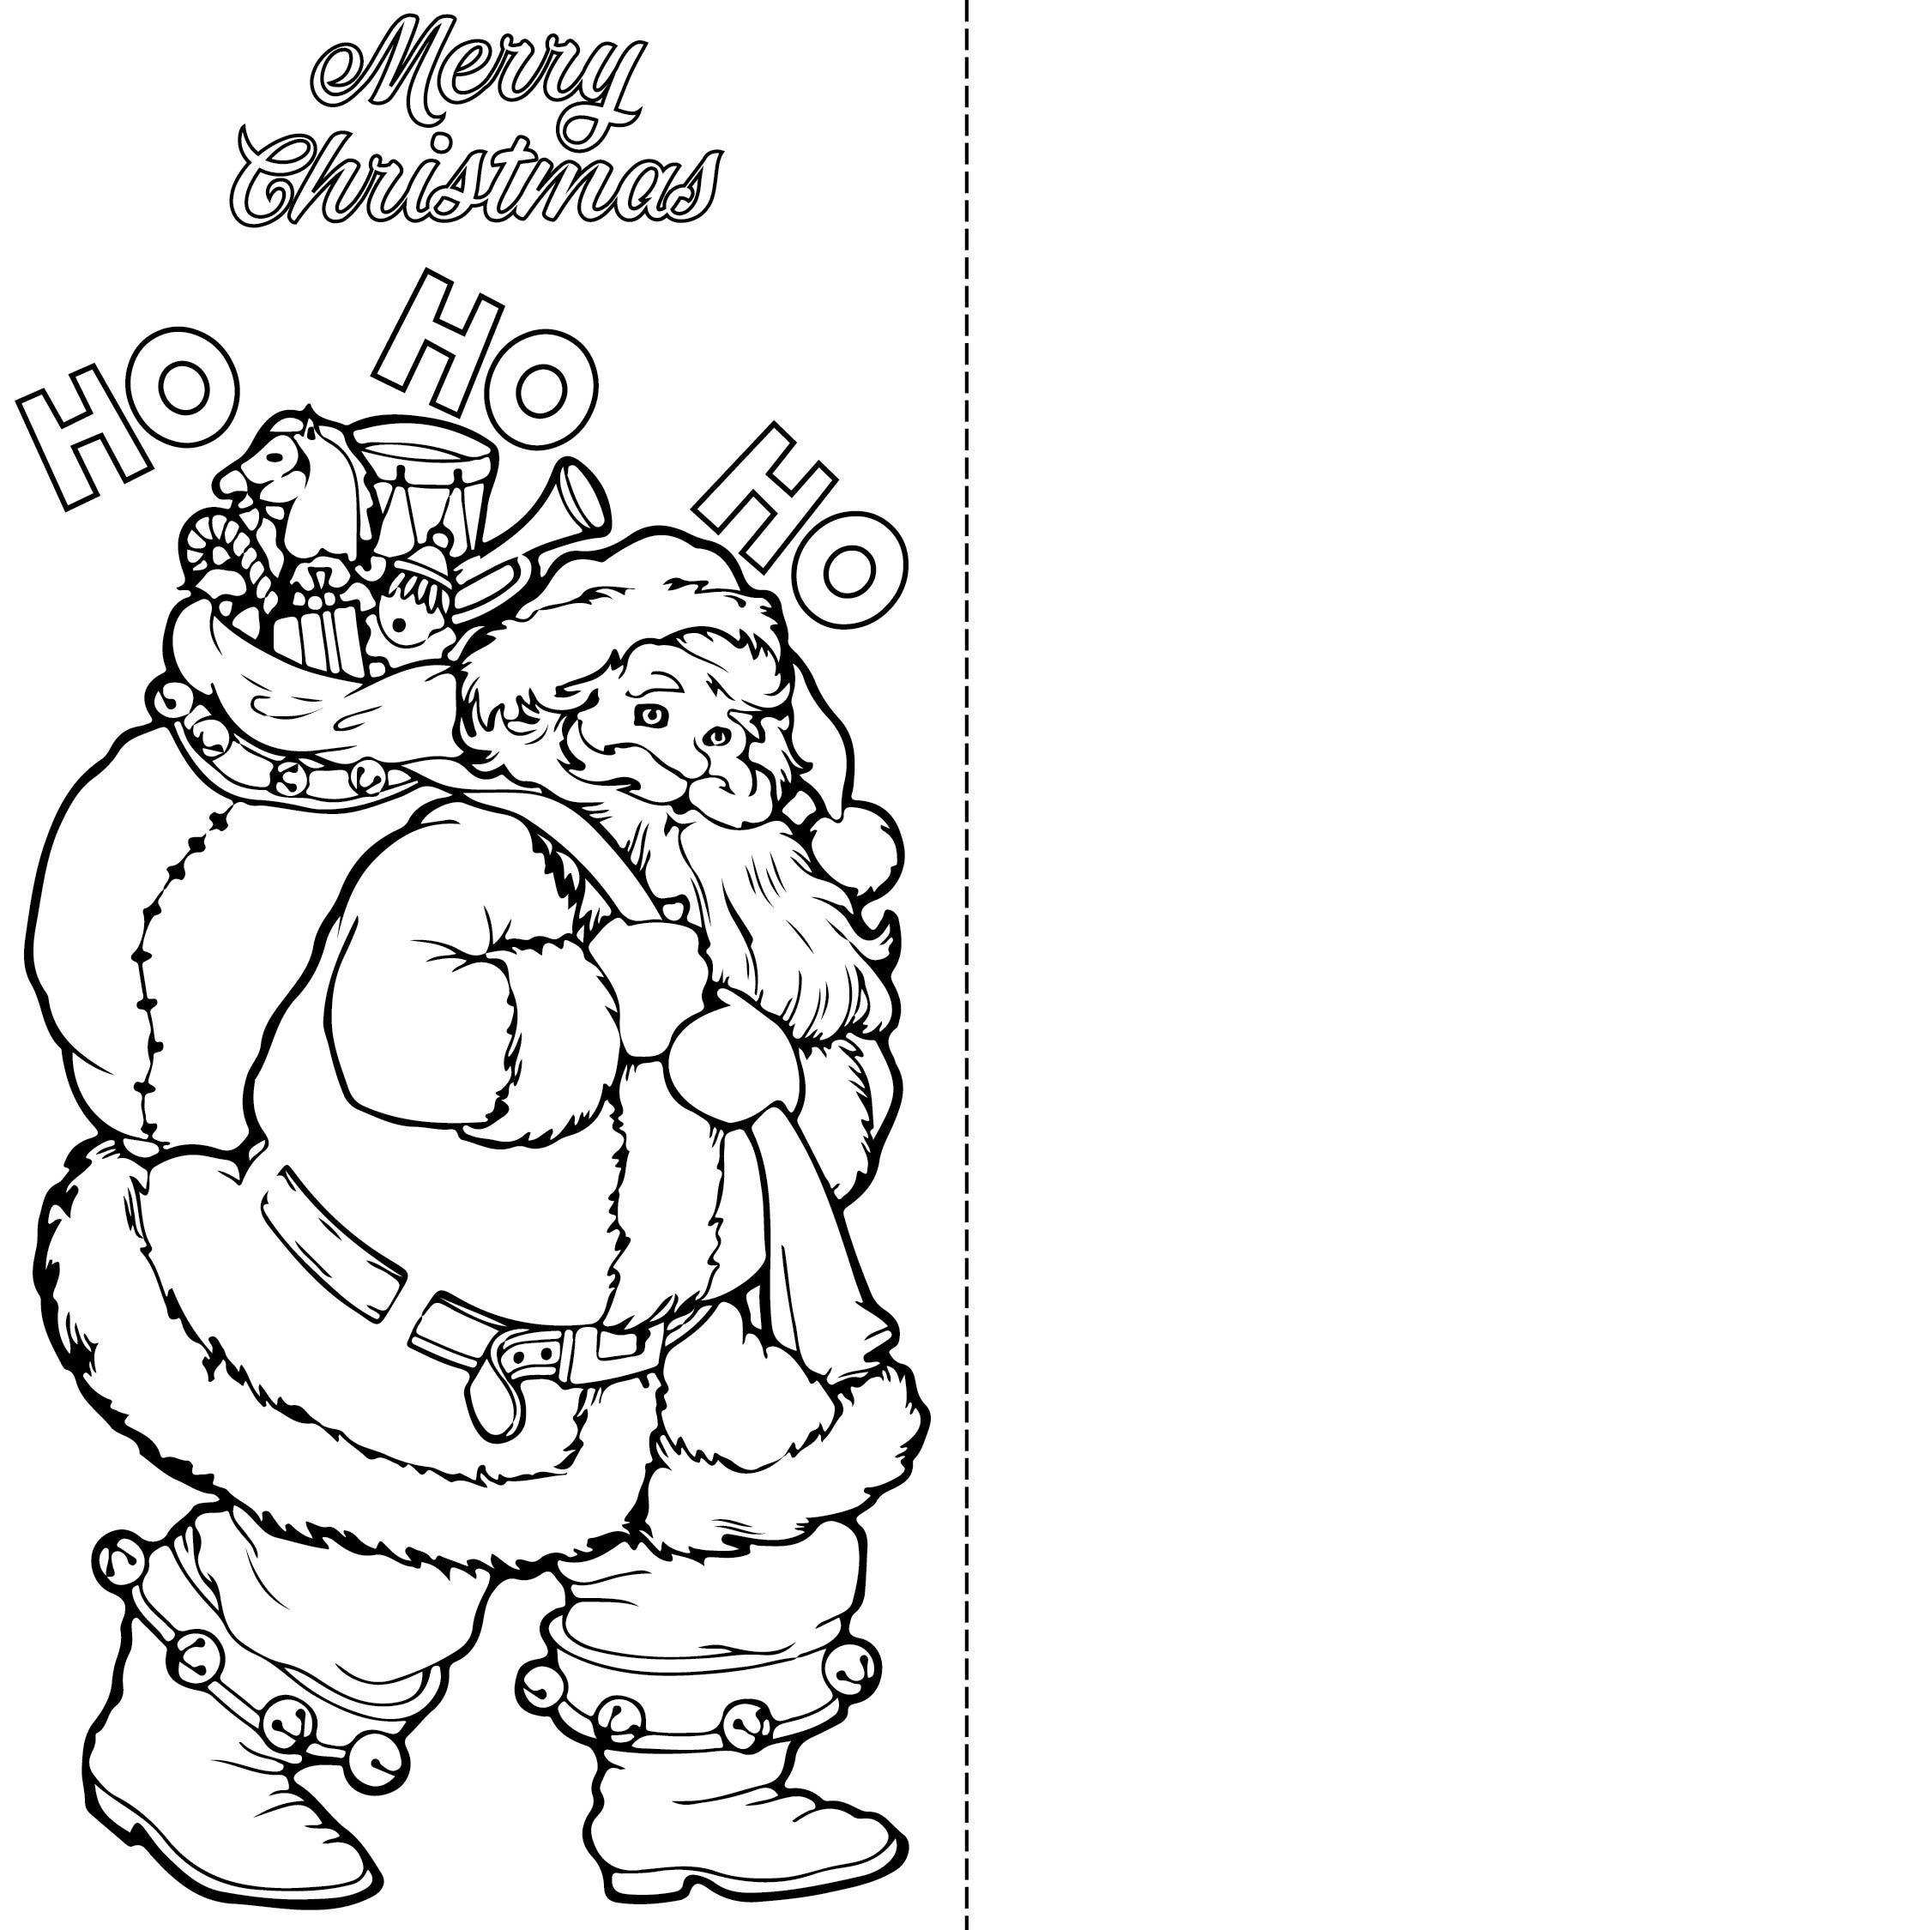 Free Printable Christmas Cards To Color - Free Printable Templates